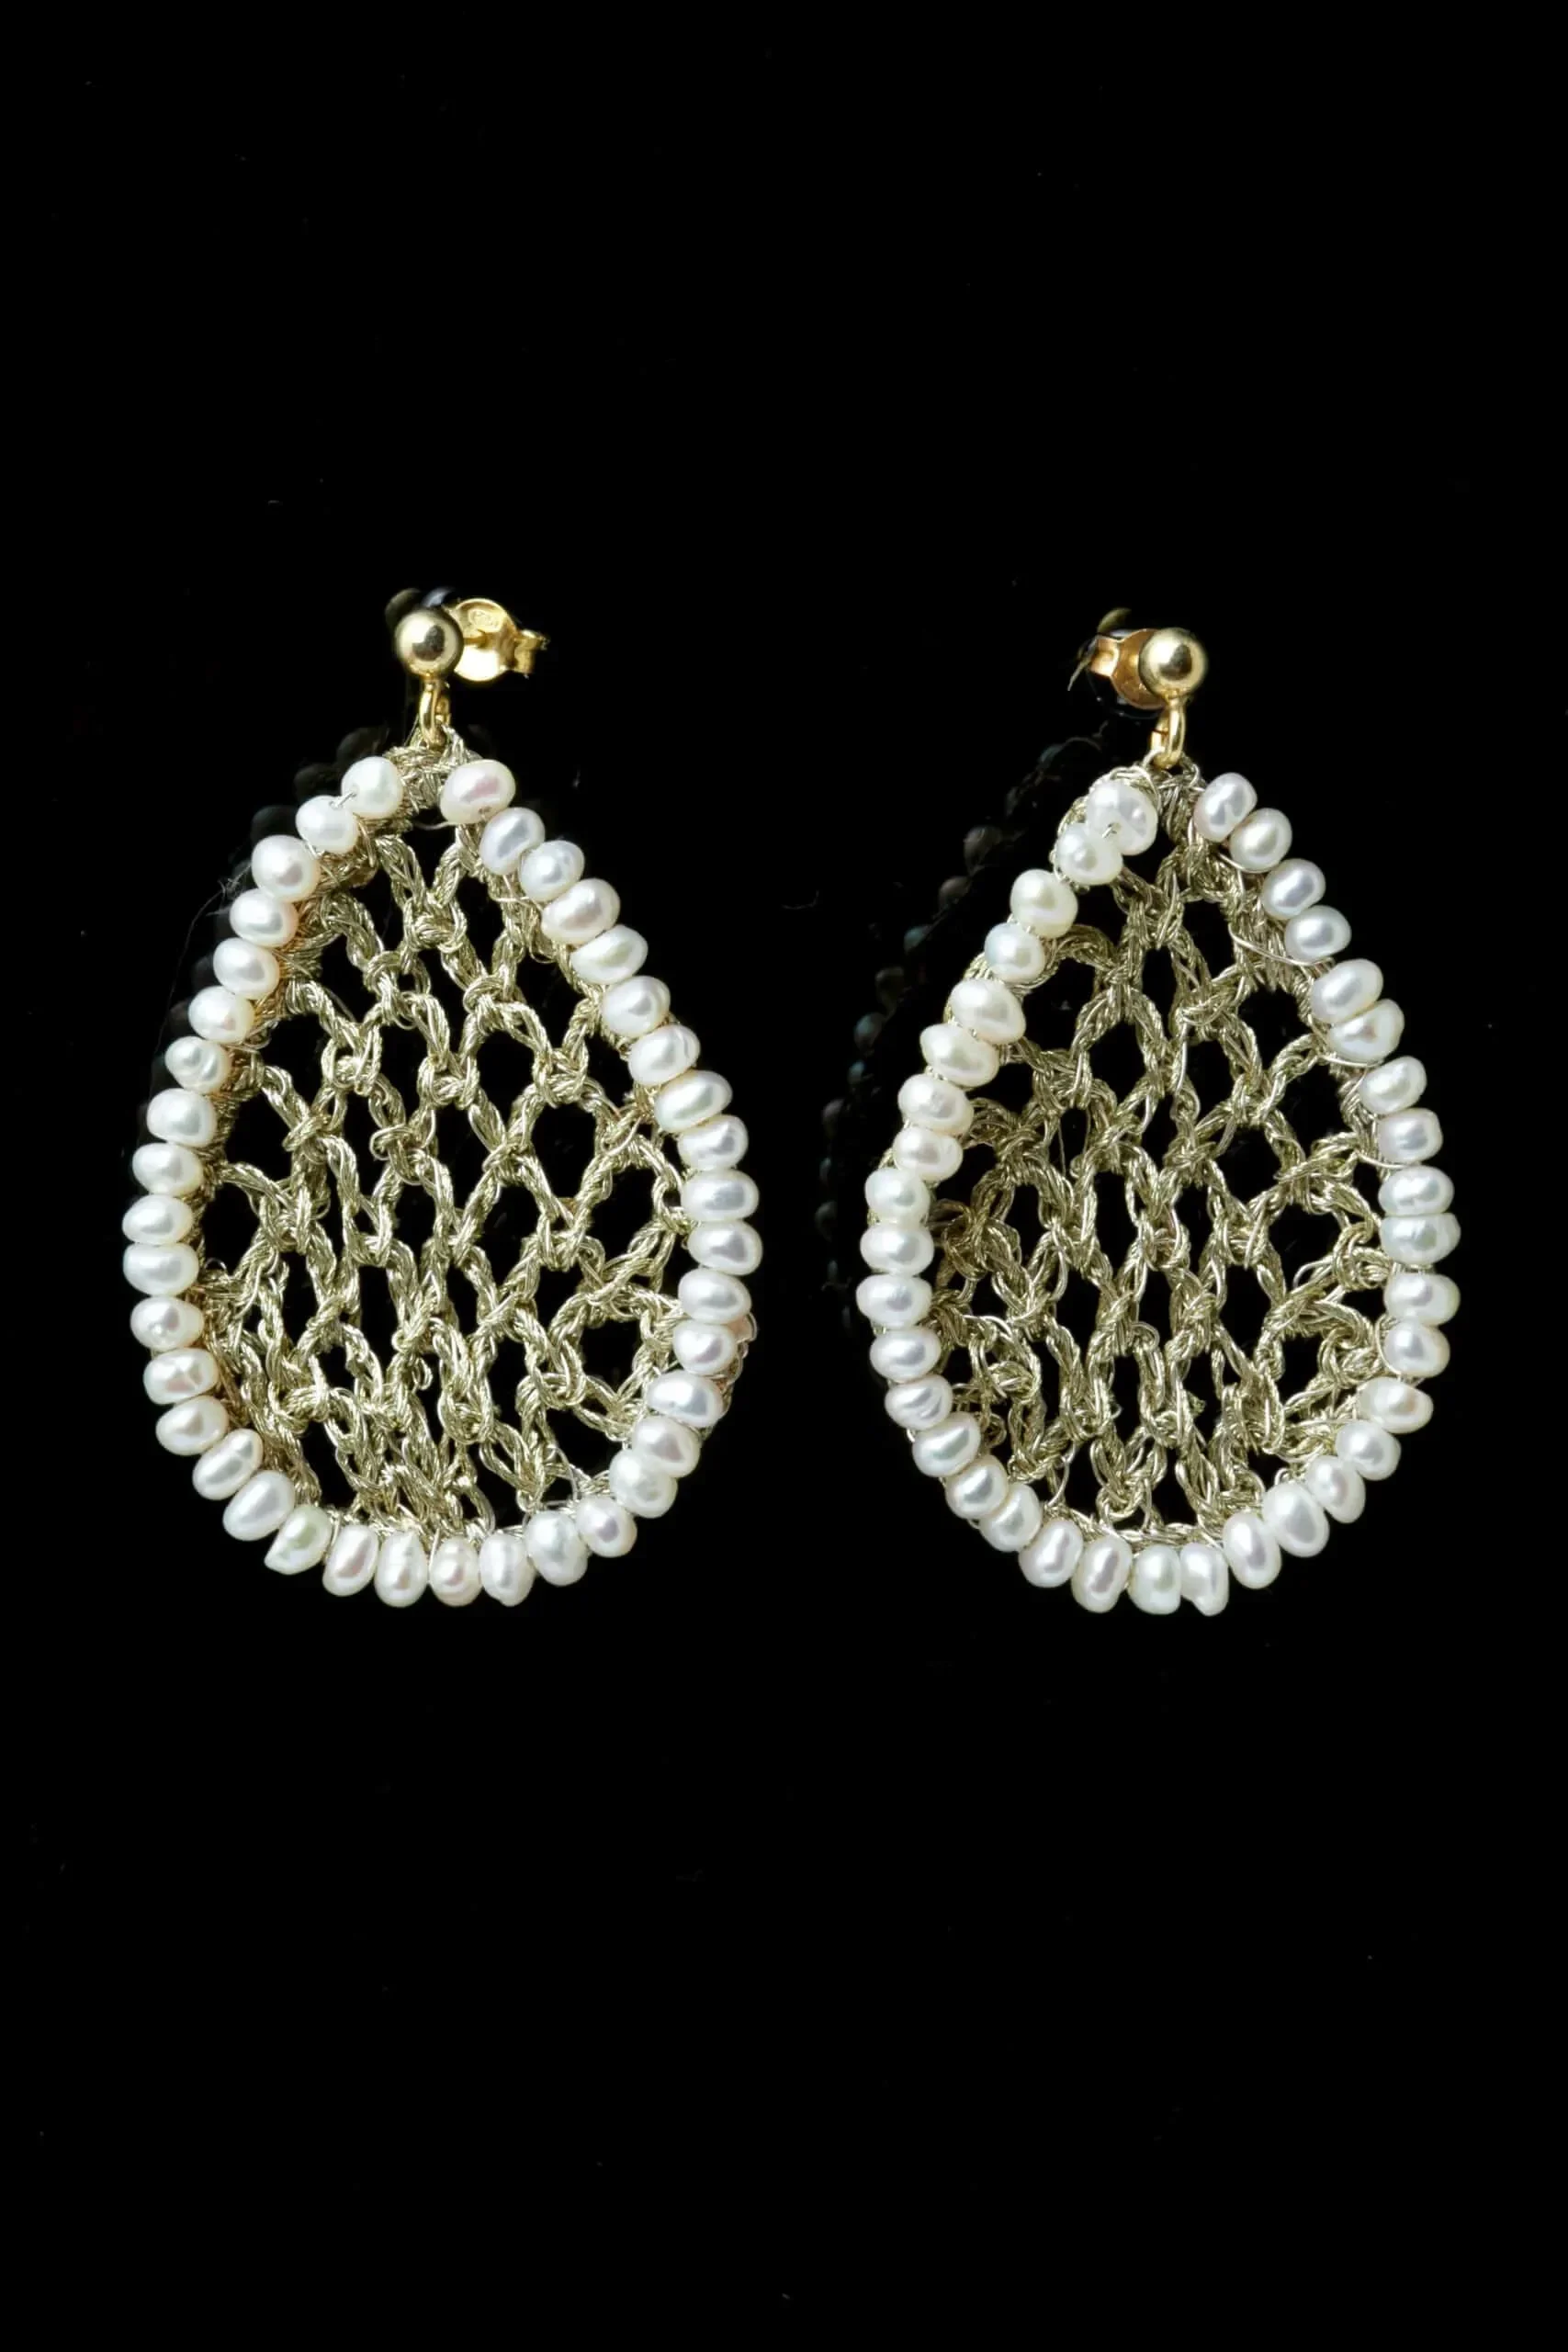 Handmade Jewellery | Teardrop crochet knit silver earrings with pearls gallery 1